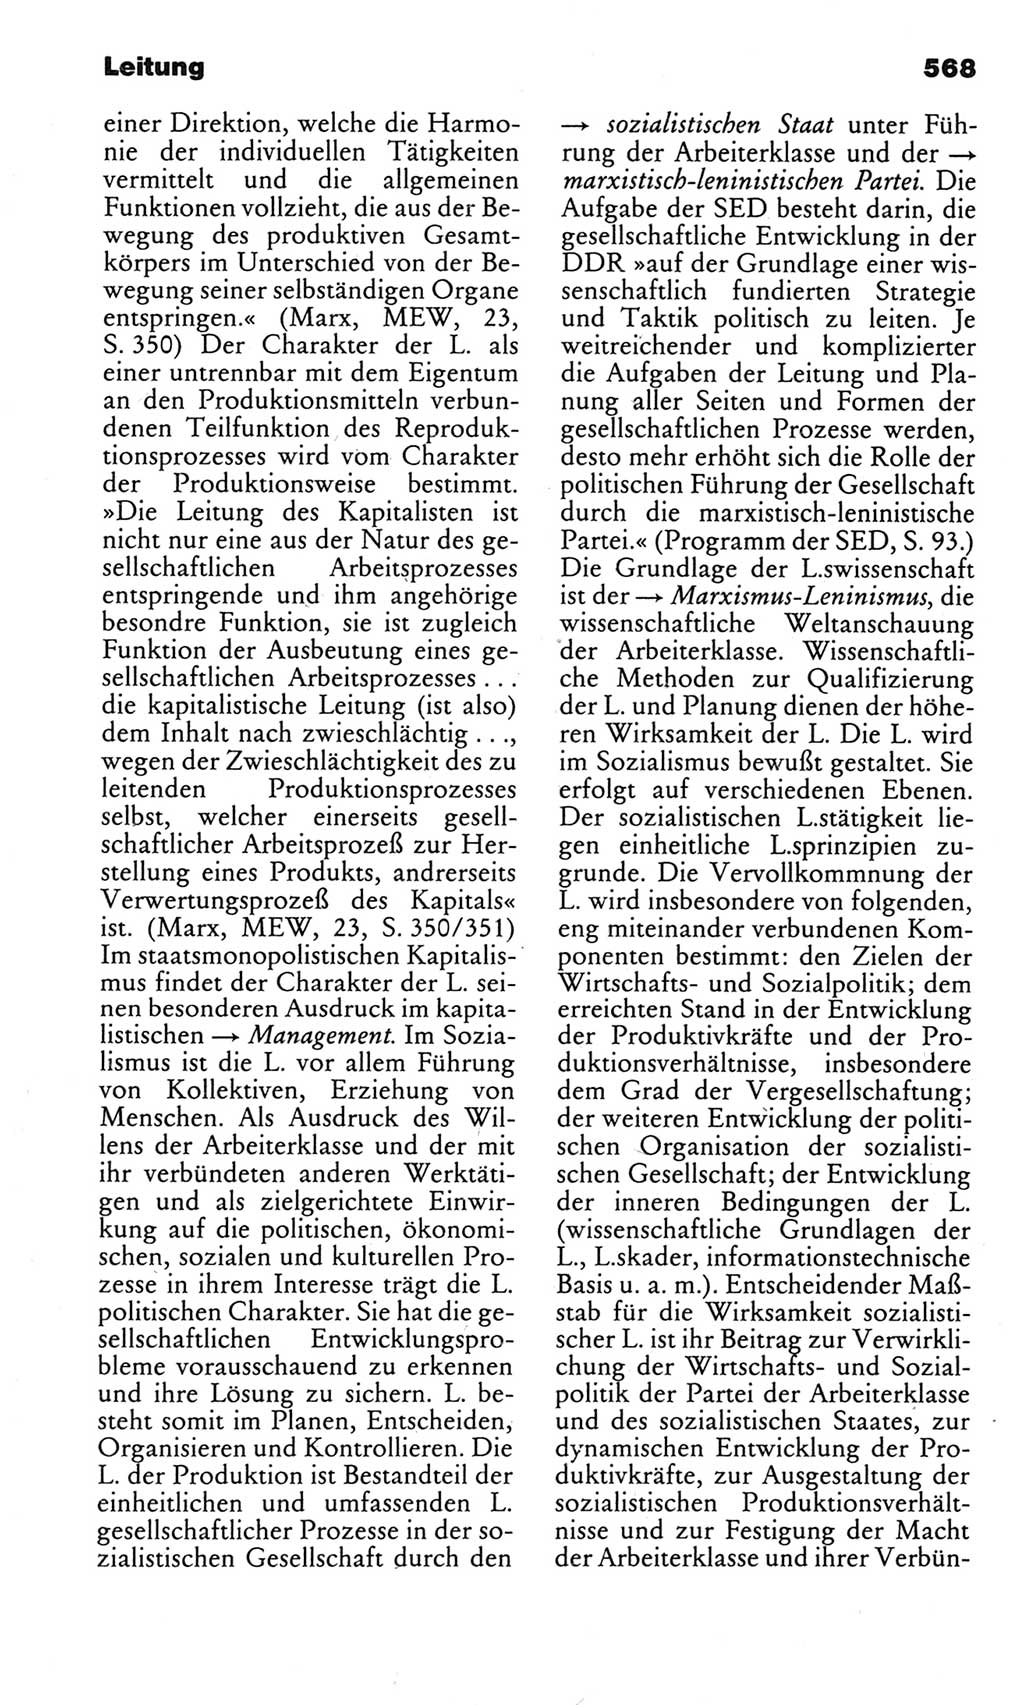 Kleines politisches Wörterbuch [Deutsche Demokratische Republik (DDR)] 1983, Seite 568 (Kl. pol. Wb. DDR 1983, S. 568)